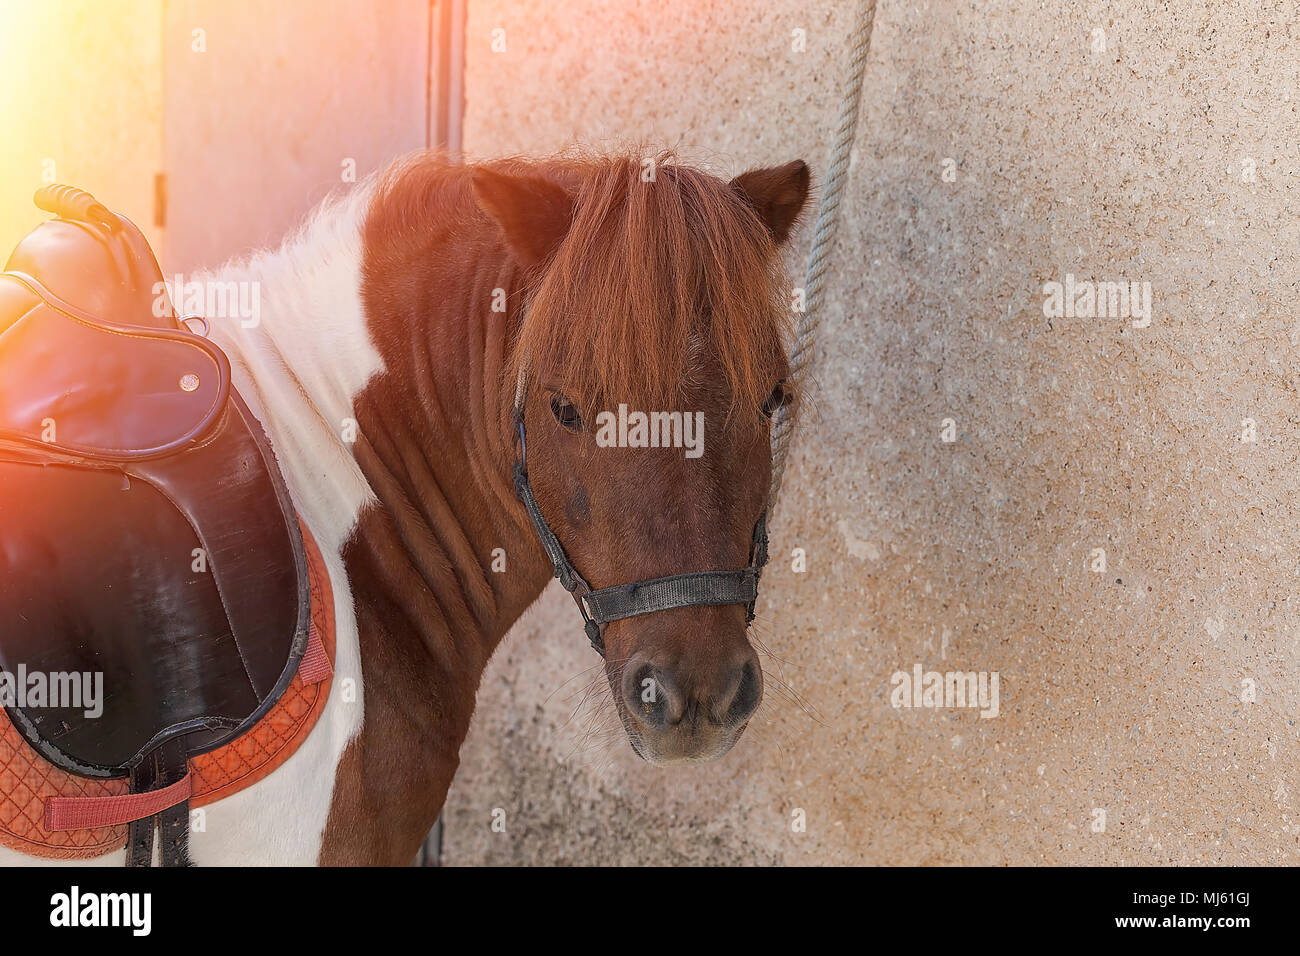 Shetland Pony saddled looking at camera. Isolated. Stock Image. Stock Photo